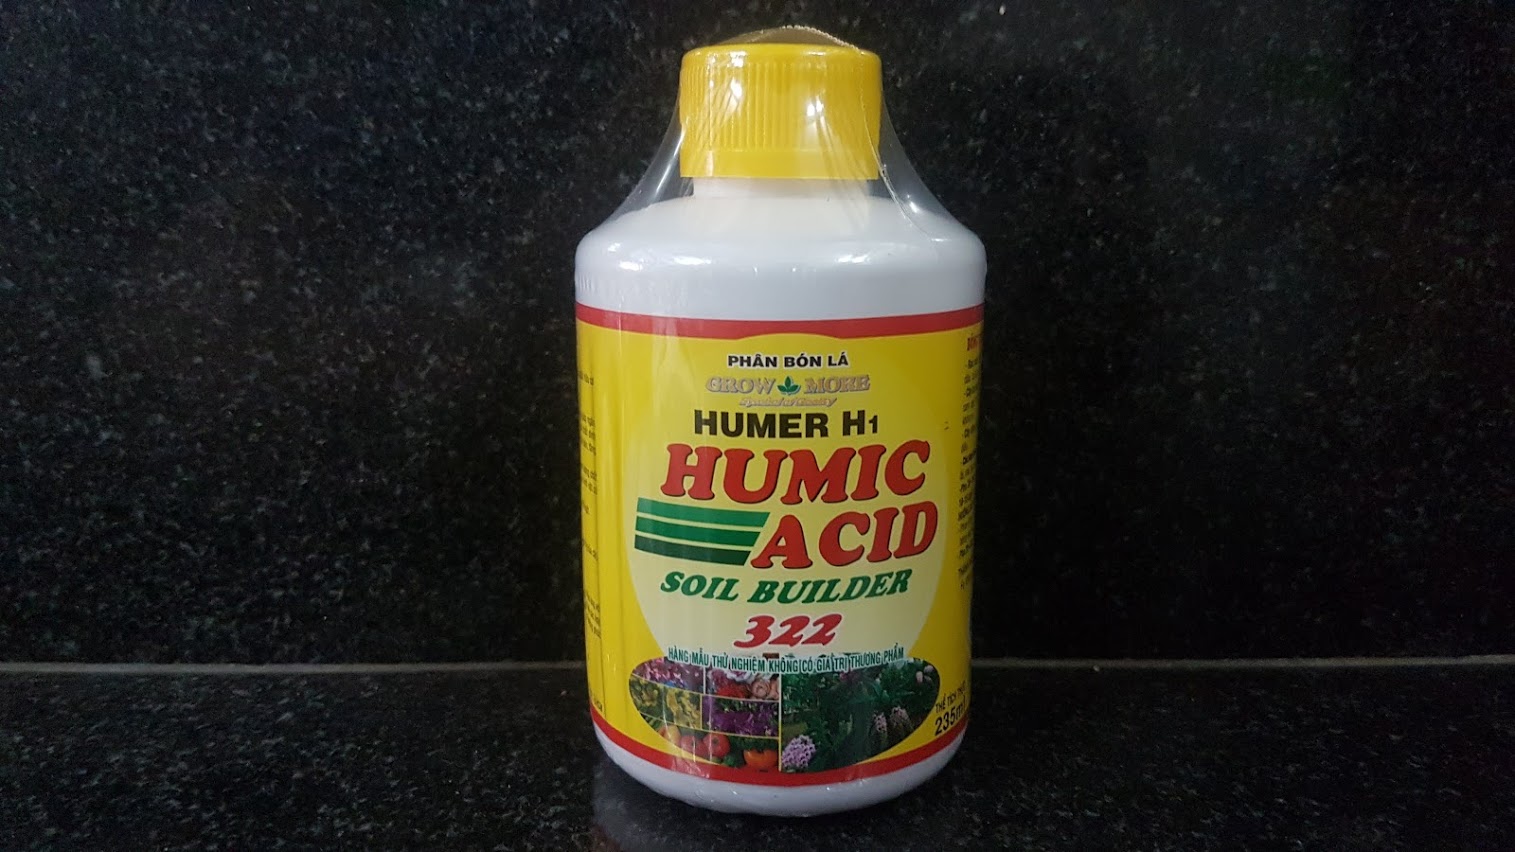 Humic acid 322 phân bón lá NPK sinh học (Chai 235 ml)